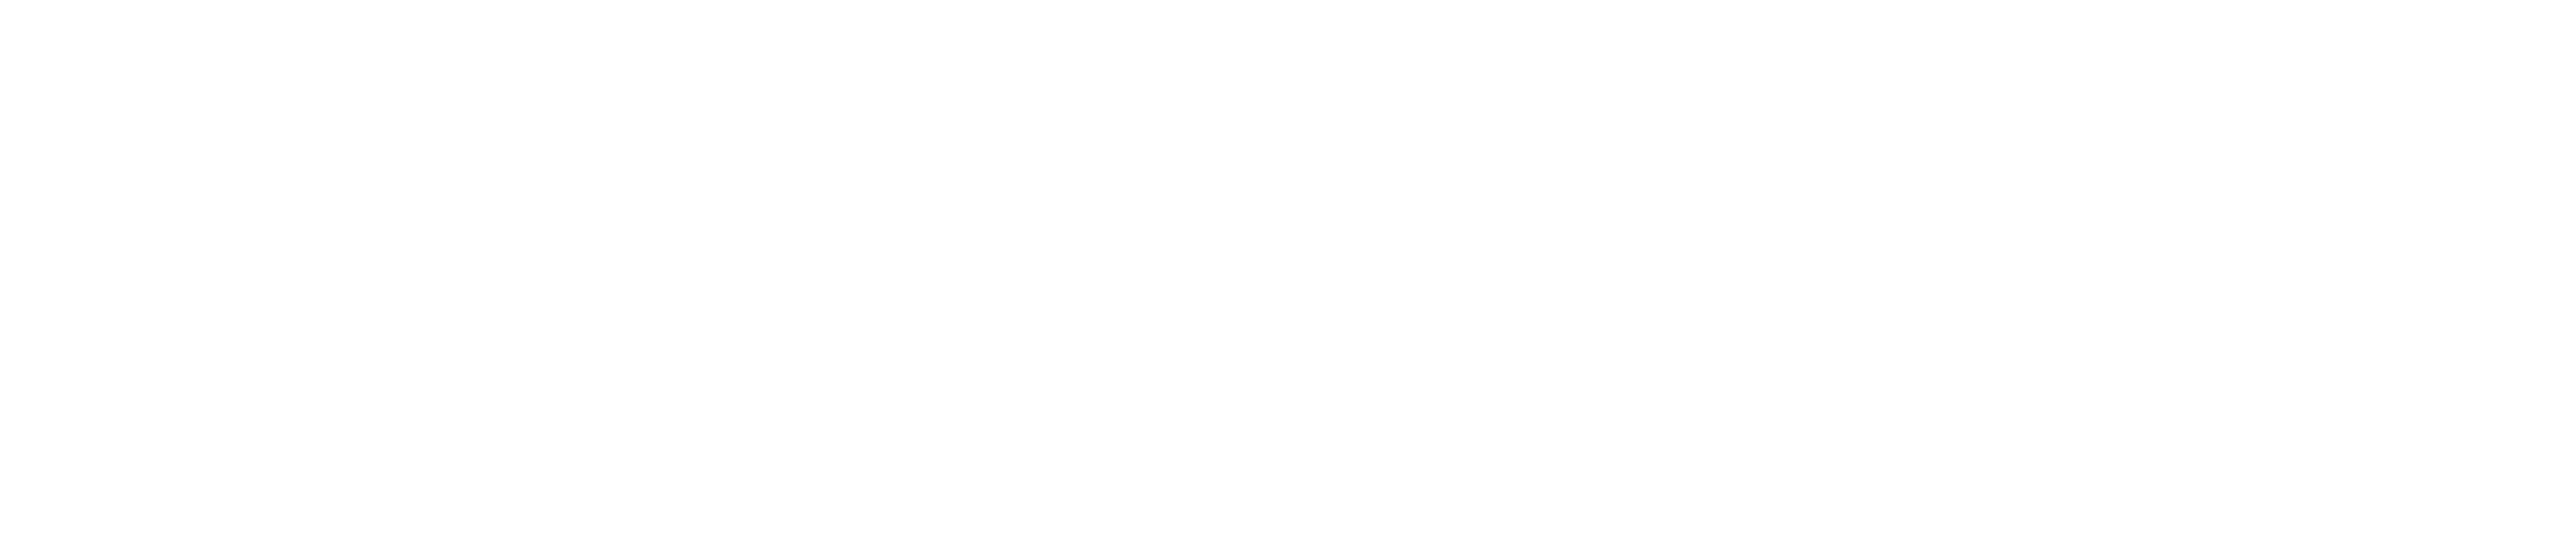 Virtual Valley Logo All White